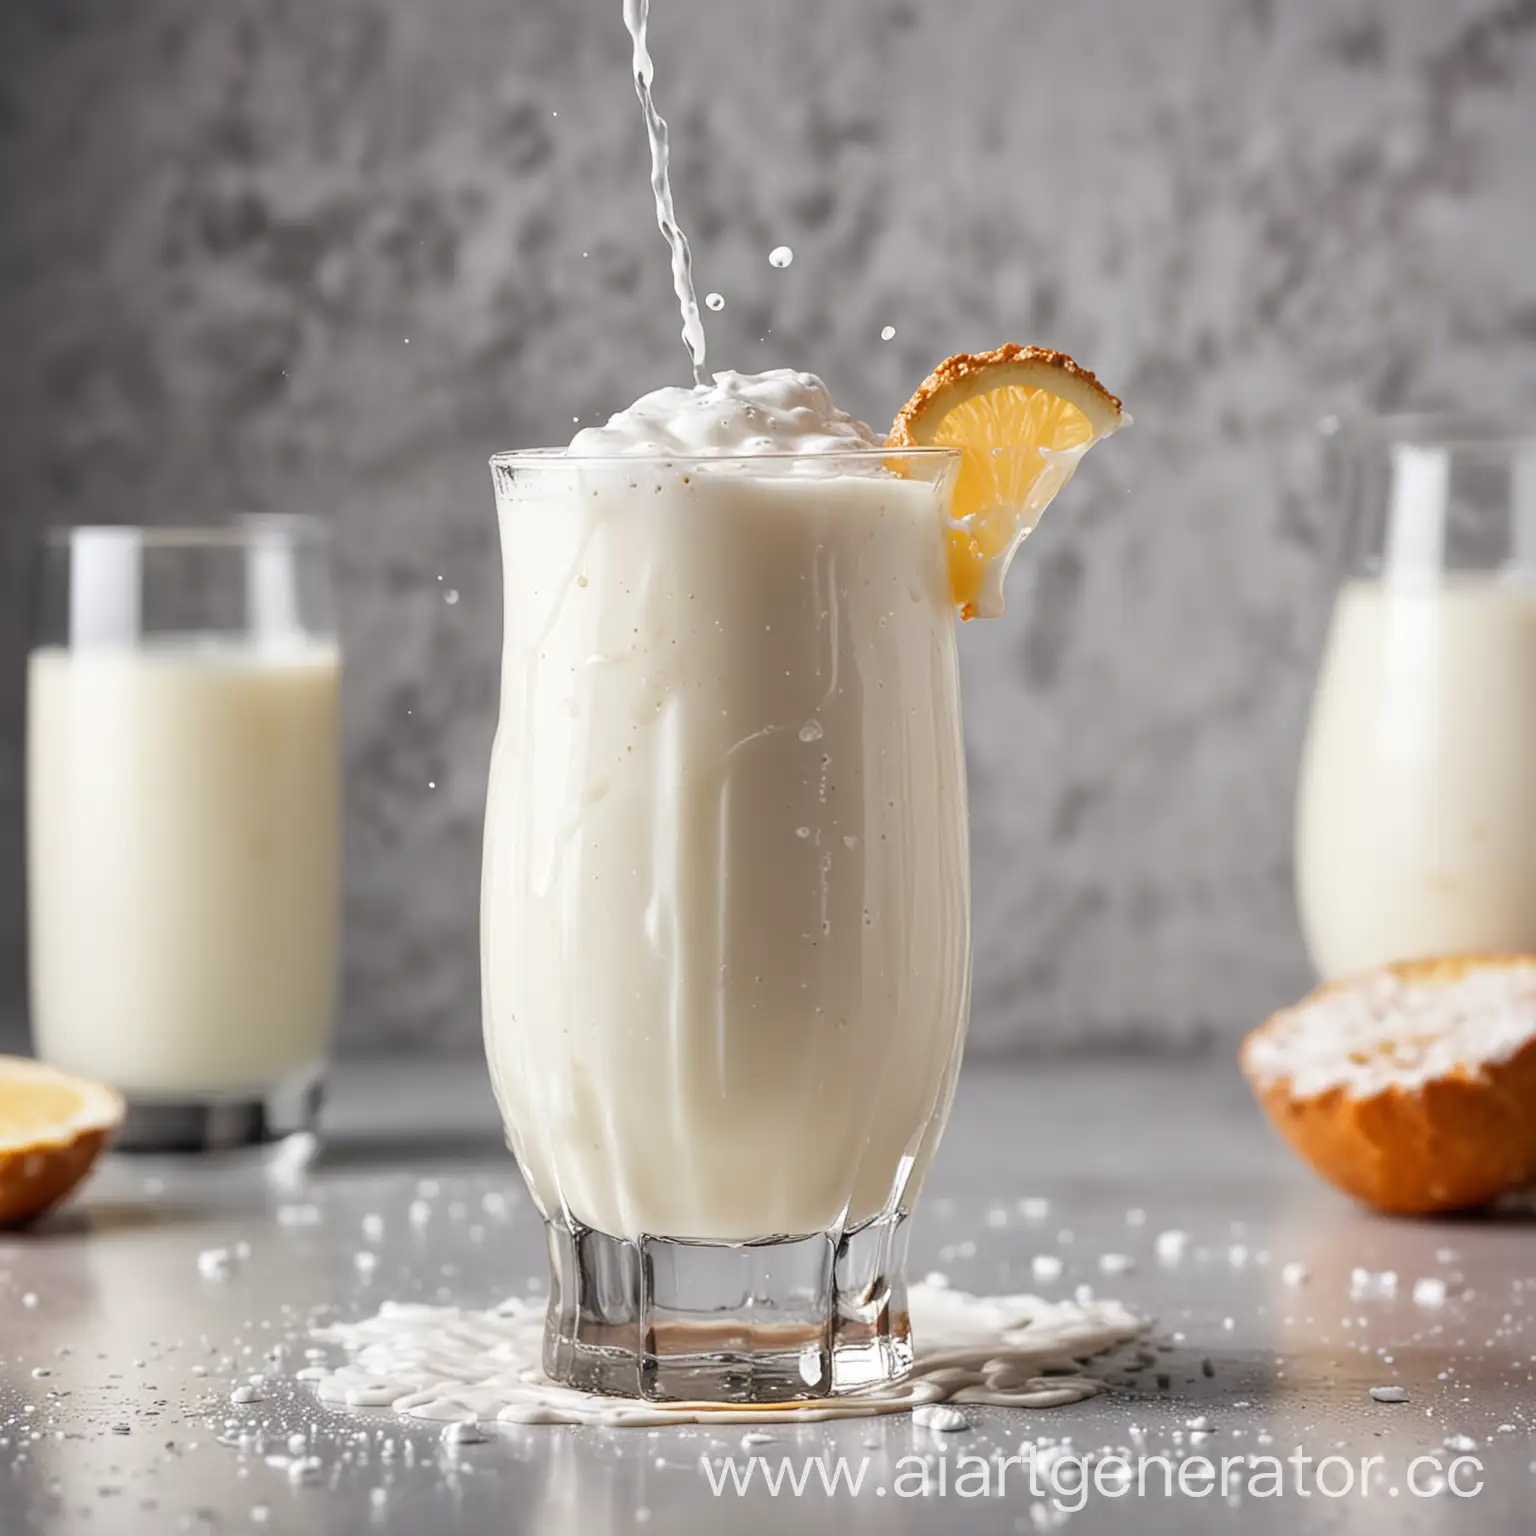 молочный коктейль в белом стаканчике на переднем фоне. вокруг стаканчика молочные брызги. задний фон белый
